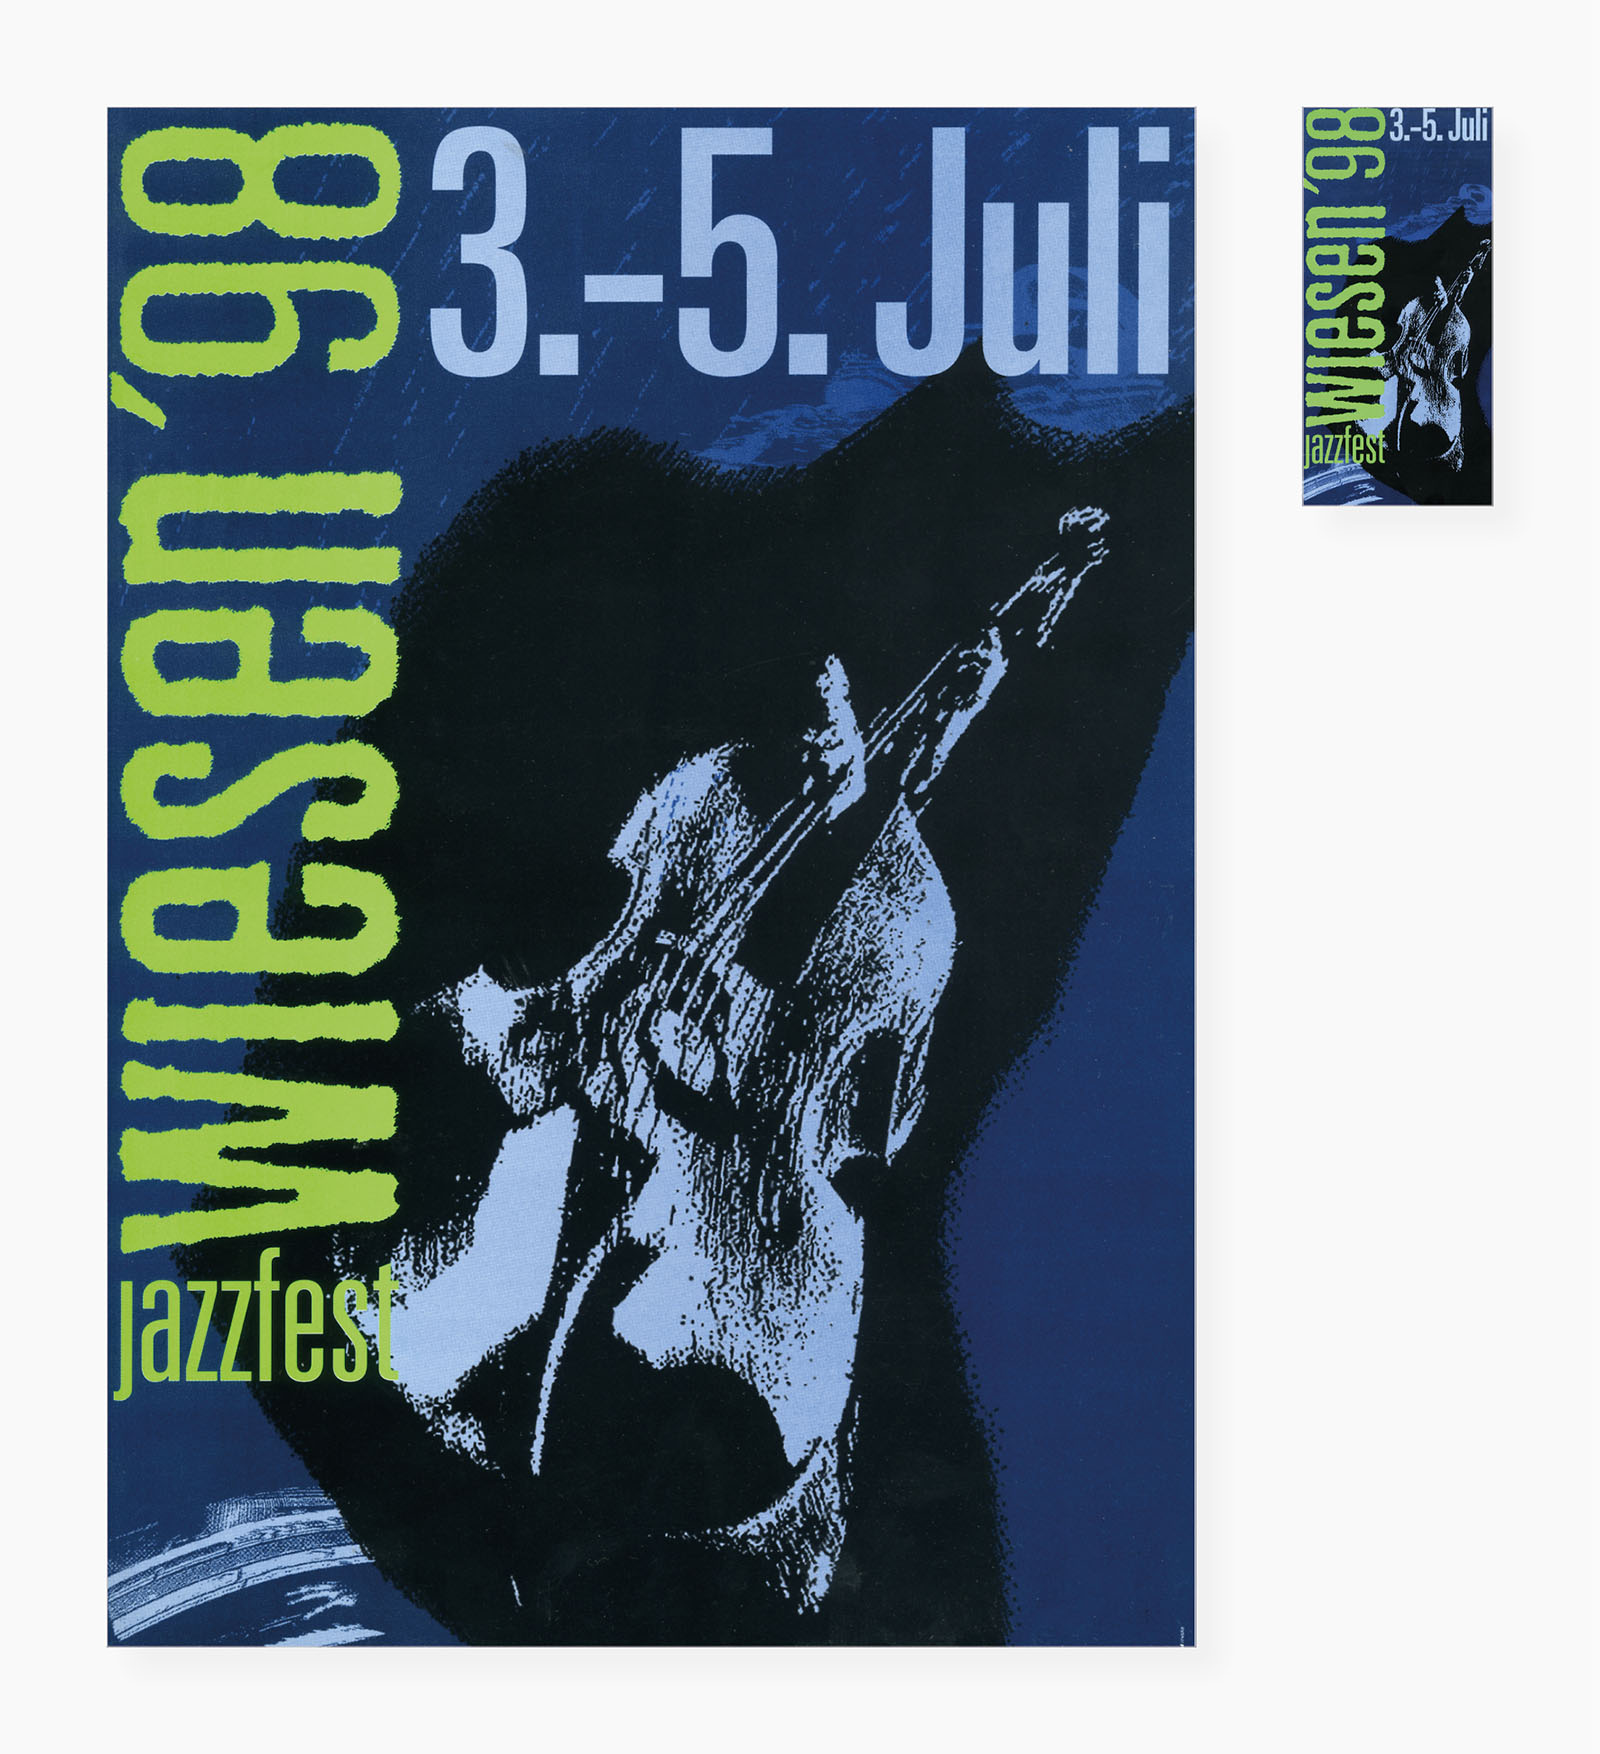 Werbesujet Jazzfest Wiesen 1998 (links Indoor-Plakat, rechts oben Folder, rechts unten Pressemappe)